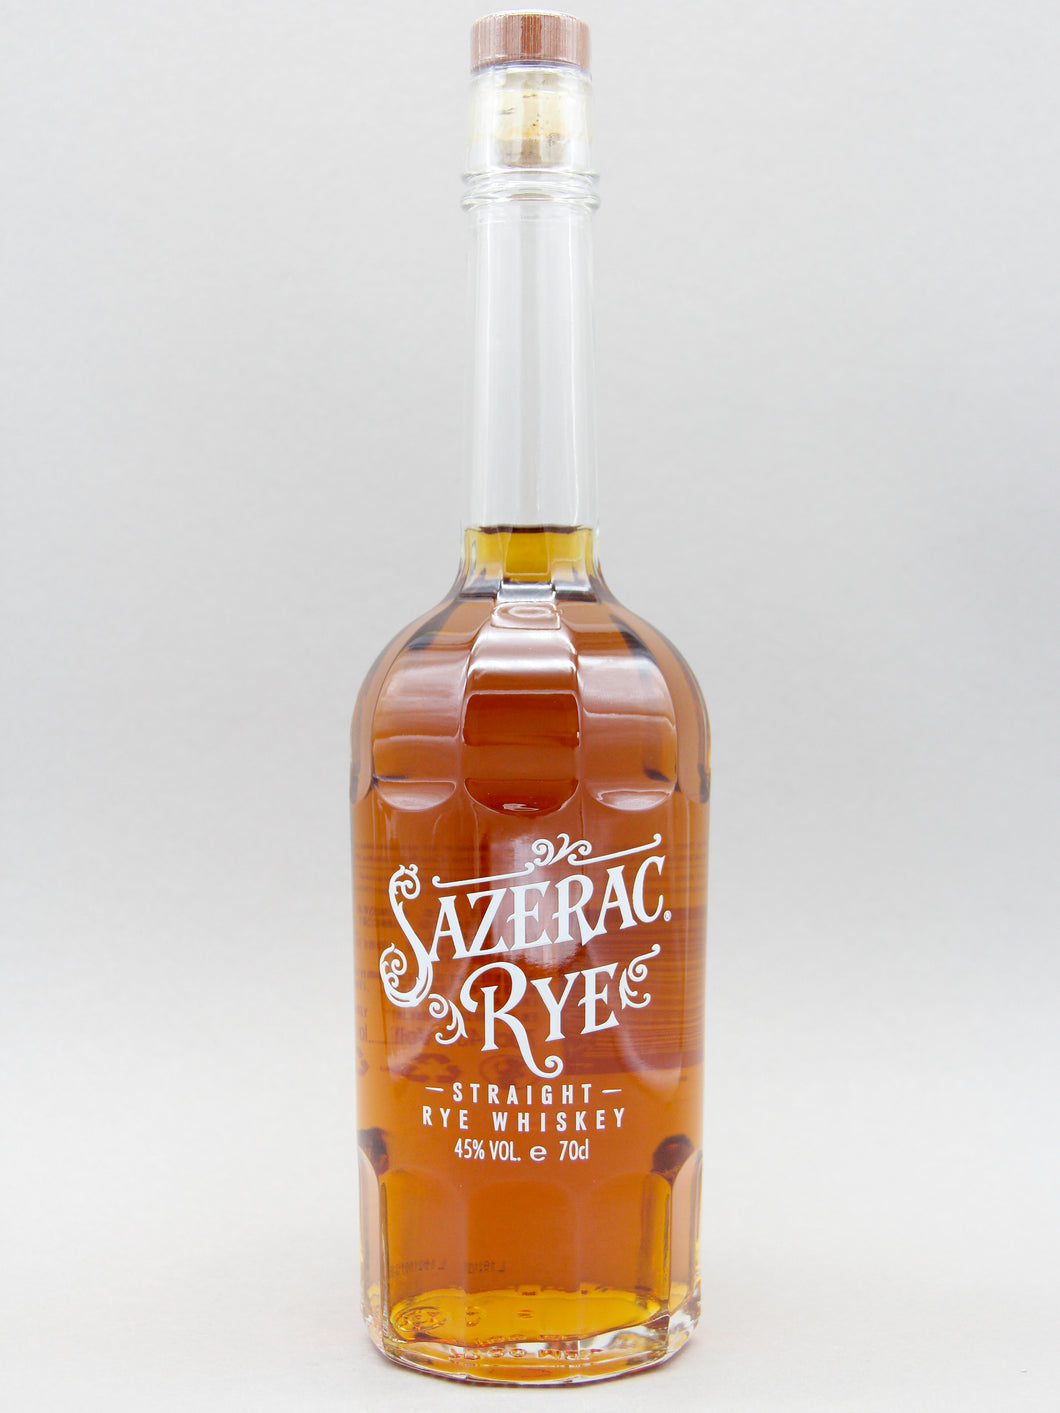 Sazerac Straight Rye Whiskey (45%, 70cl)